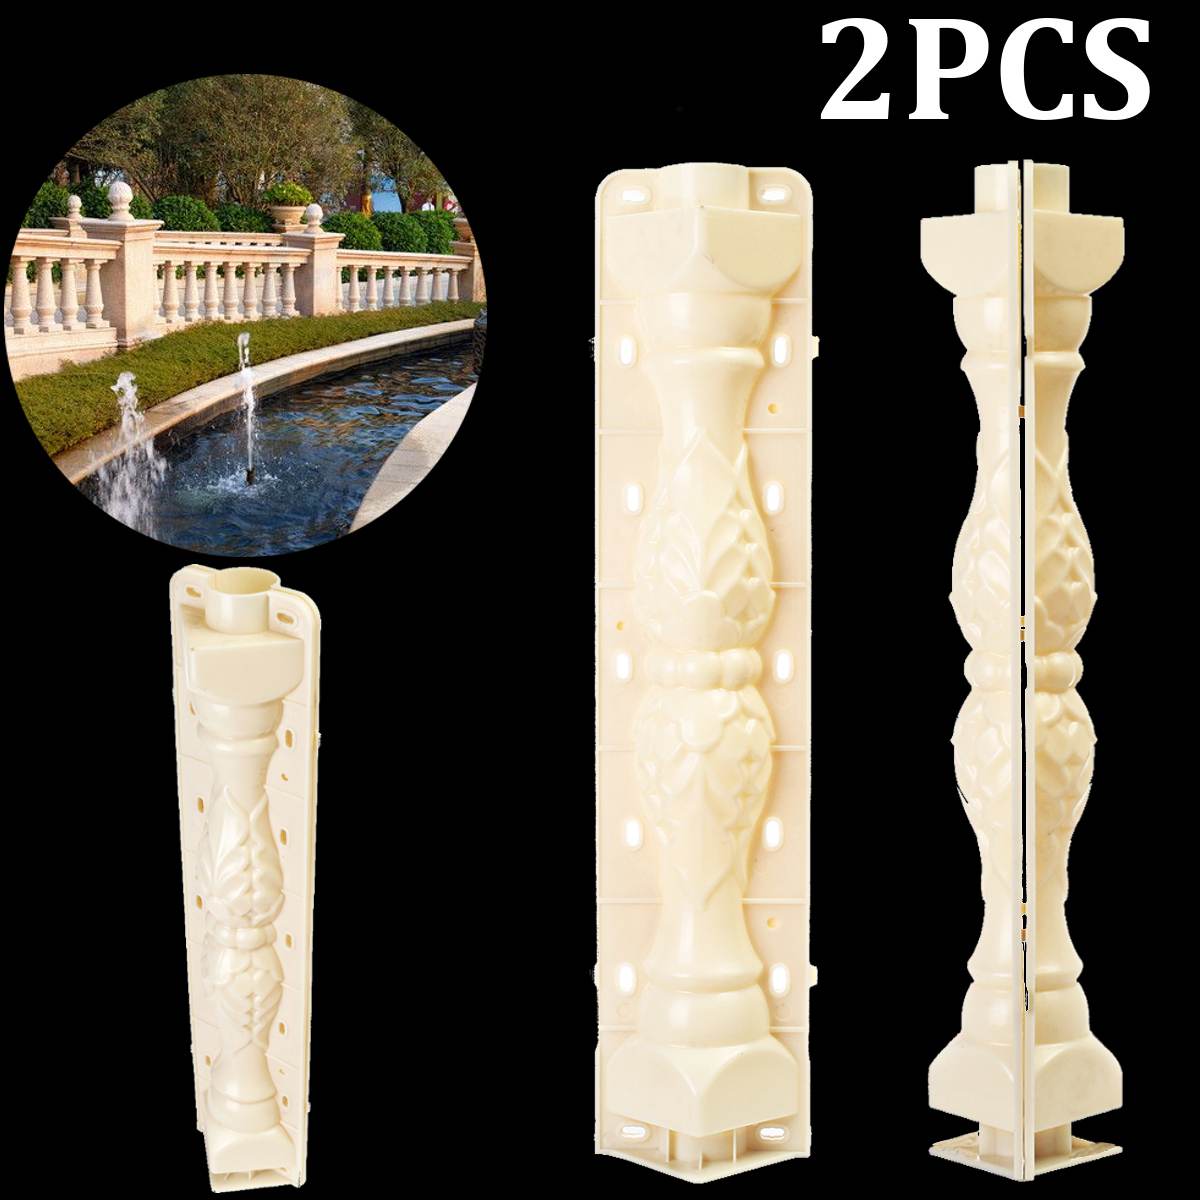 2Pcs 70*18 cm Roman Column Mold Fence Cement Mold Balcony Garden Railing Plaster Concrete Mold Plastic Casting guarden Building